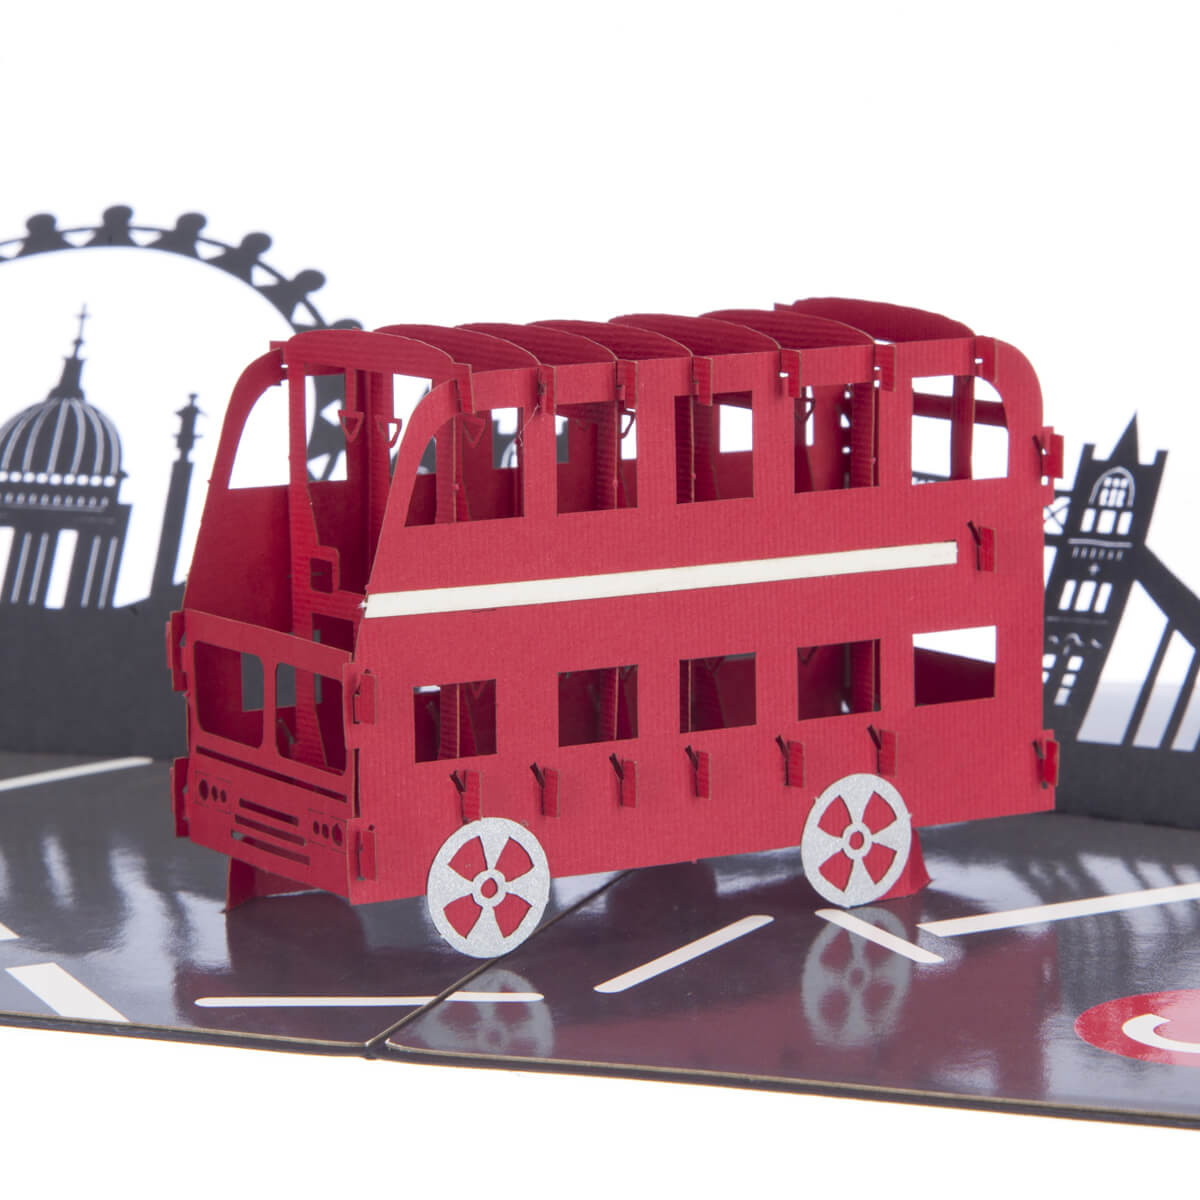 London Bus with London skyline 3D Pop Up Card